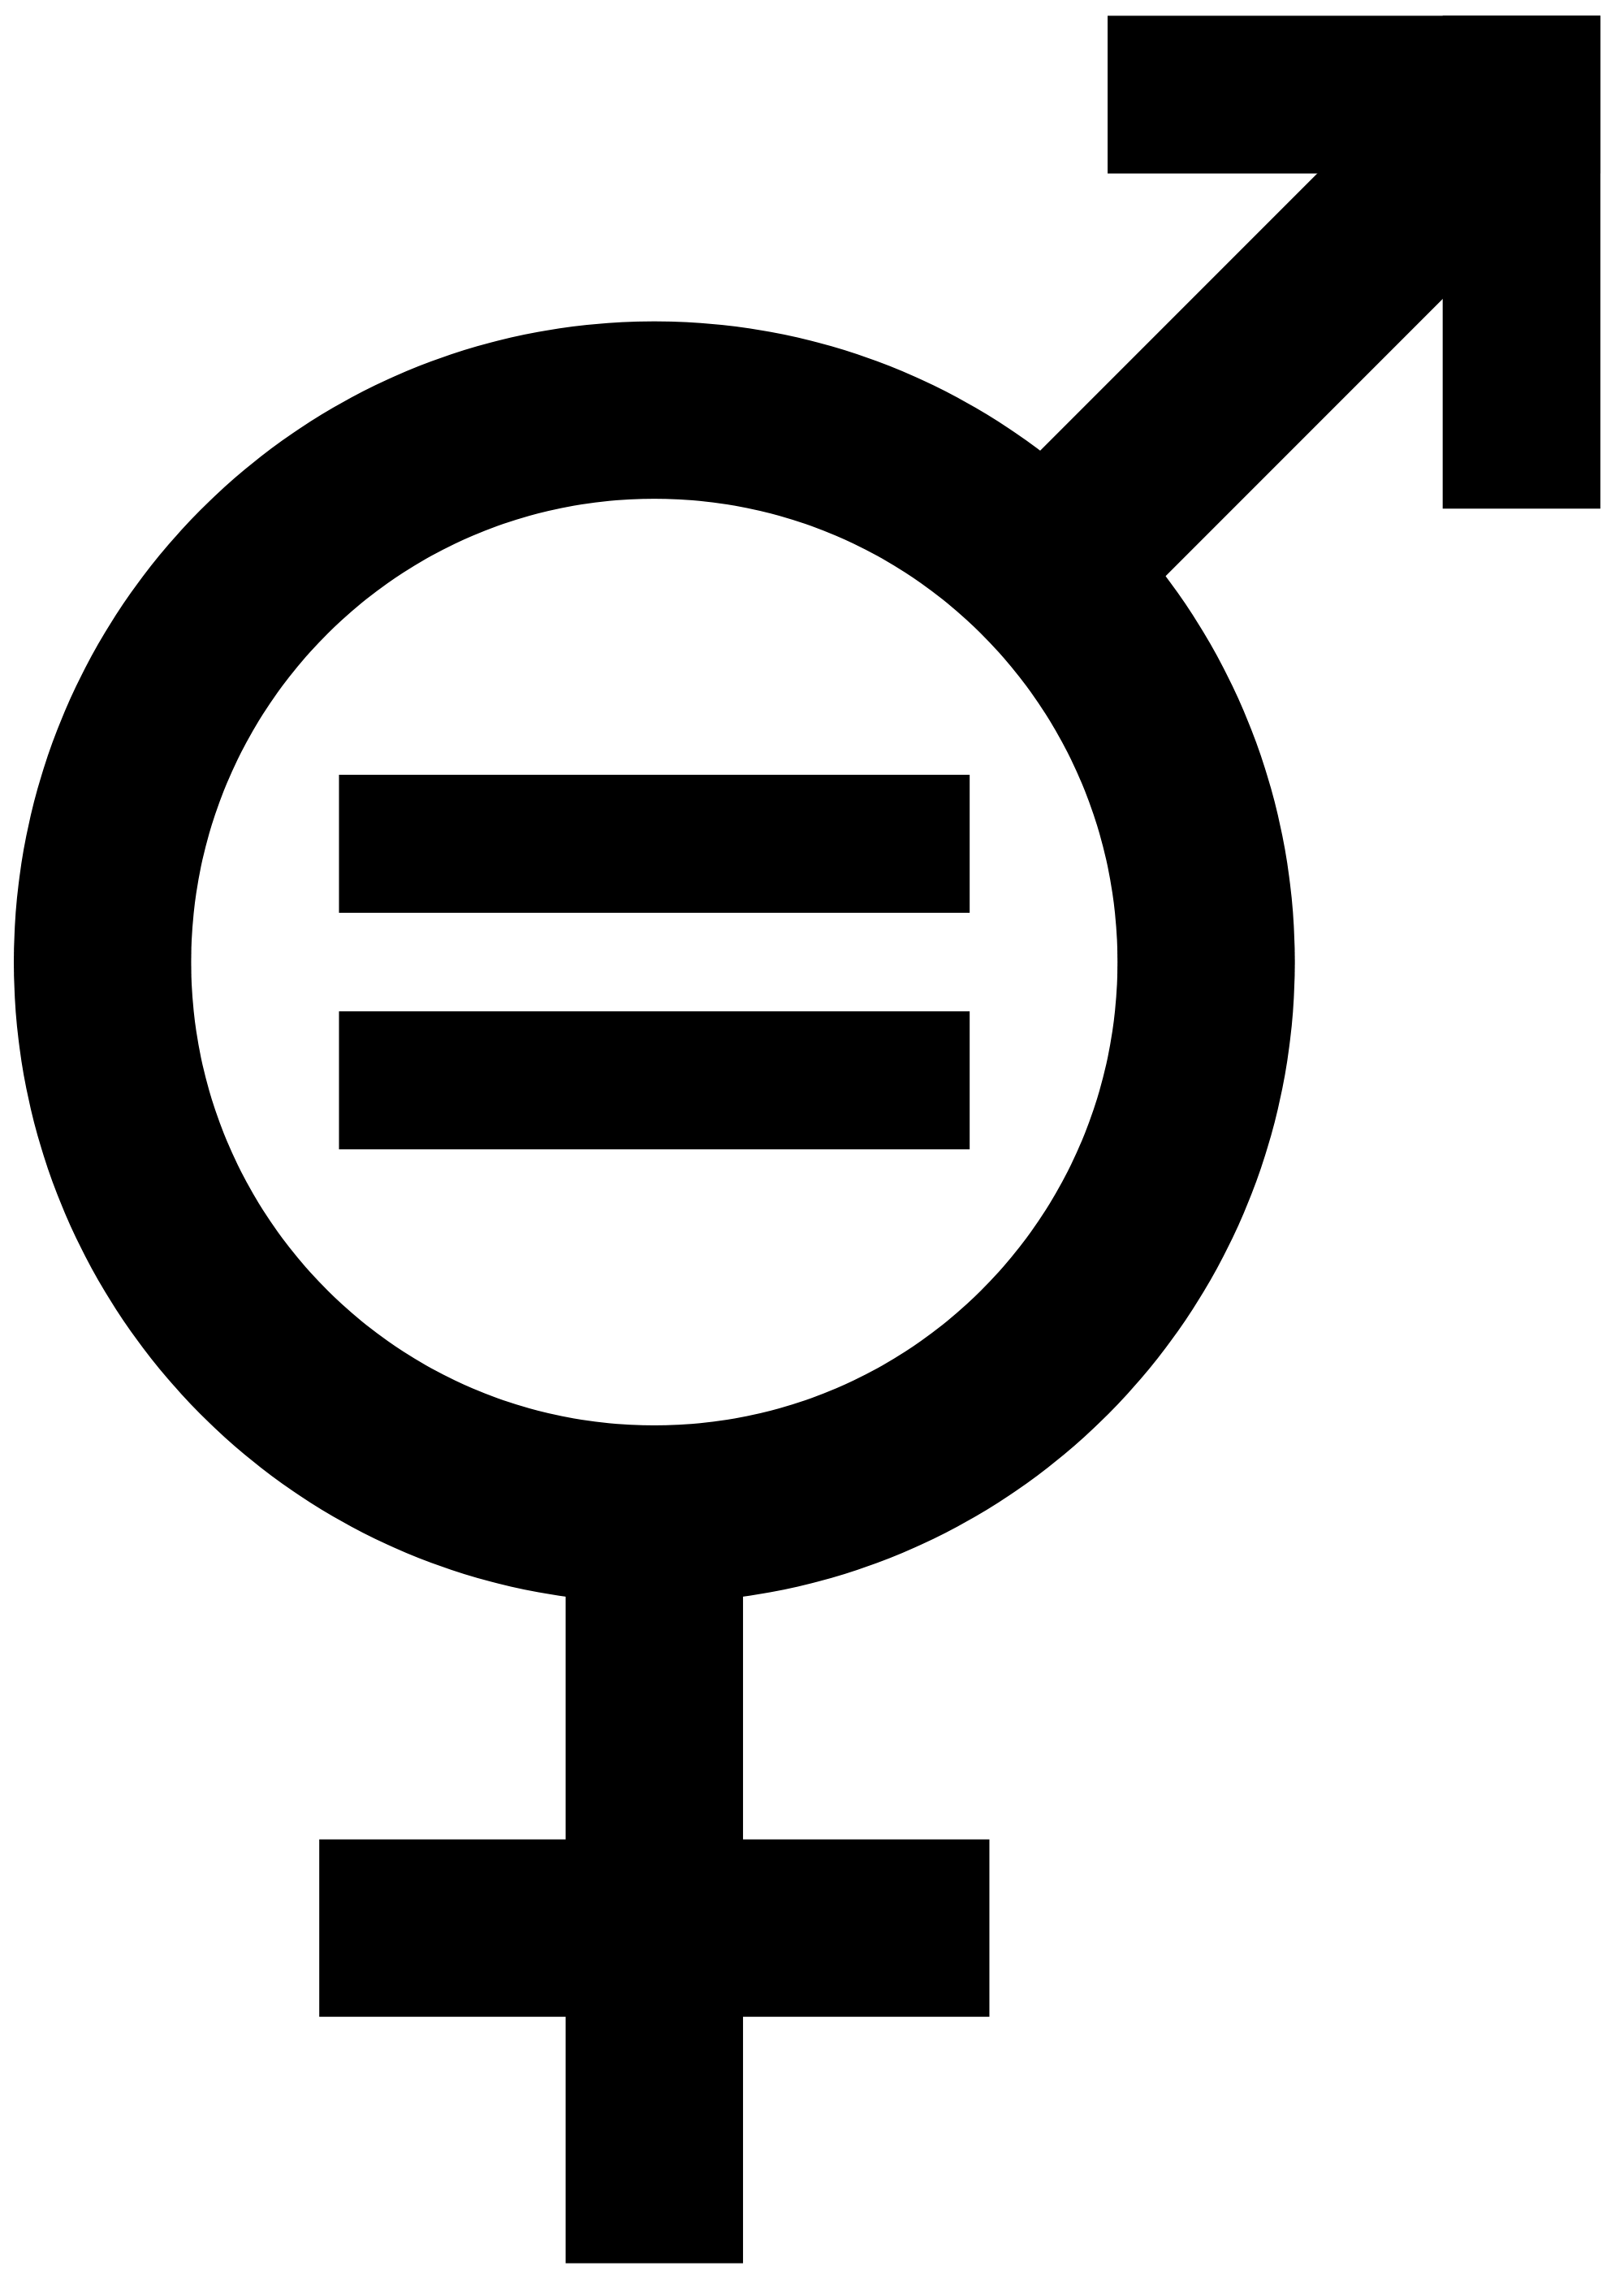 Equality Logo - Gender equality